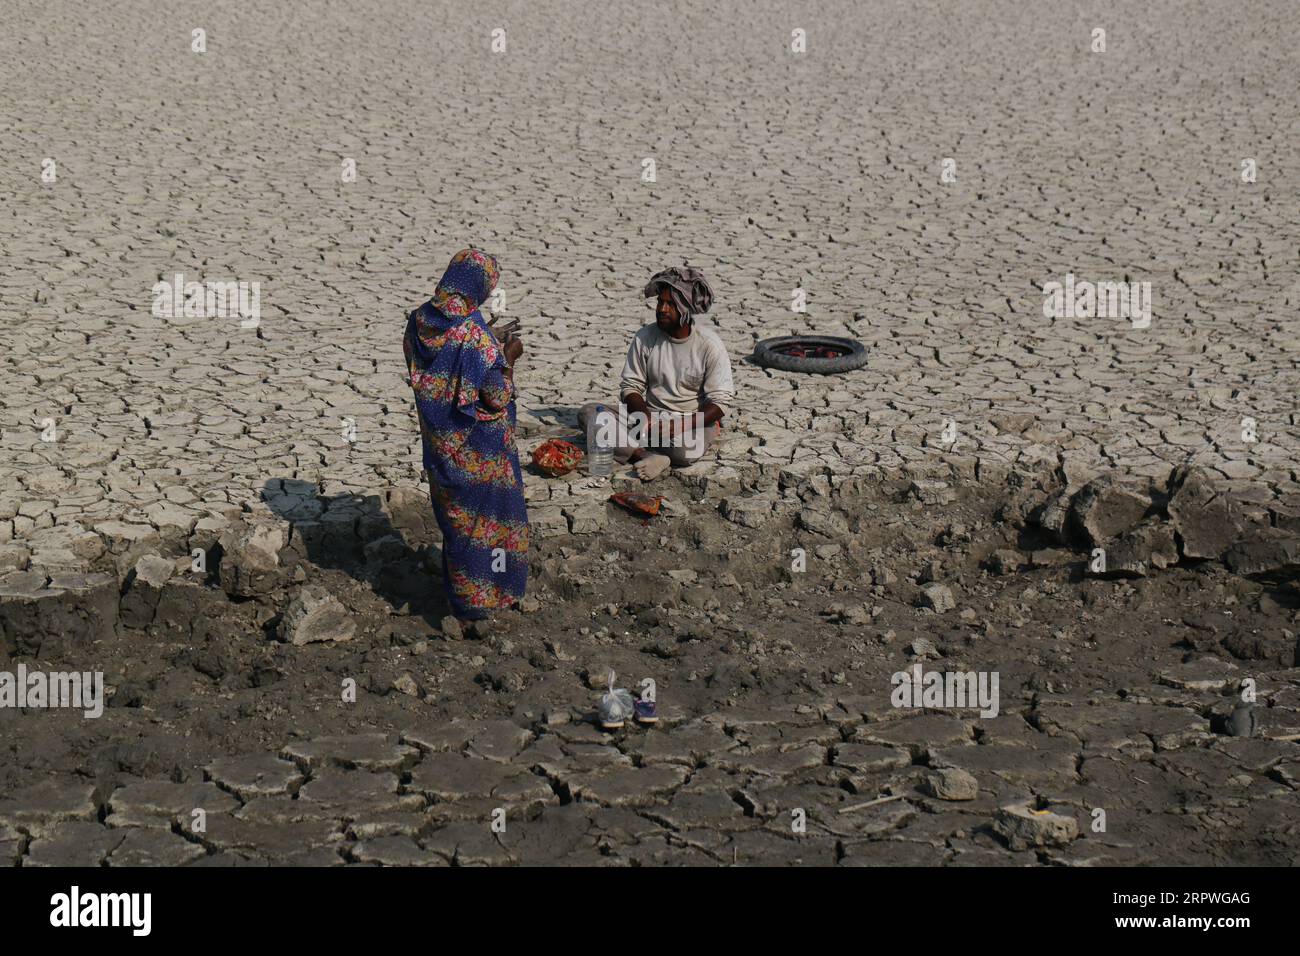 Les ouvriers se reposent alors qu’ils réparent le barrage après qu’un cyclone ait frappé les zones côtières du Bangladesh le 5 janvier 2021. Des millions de personnes sont touchées par la crise climatique dans les ceintures côtières du Bangladesh. Banque D'Images